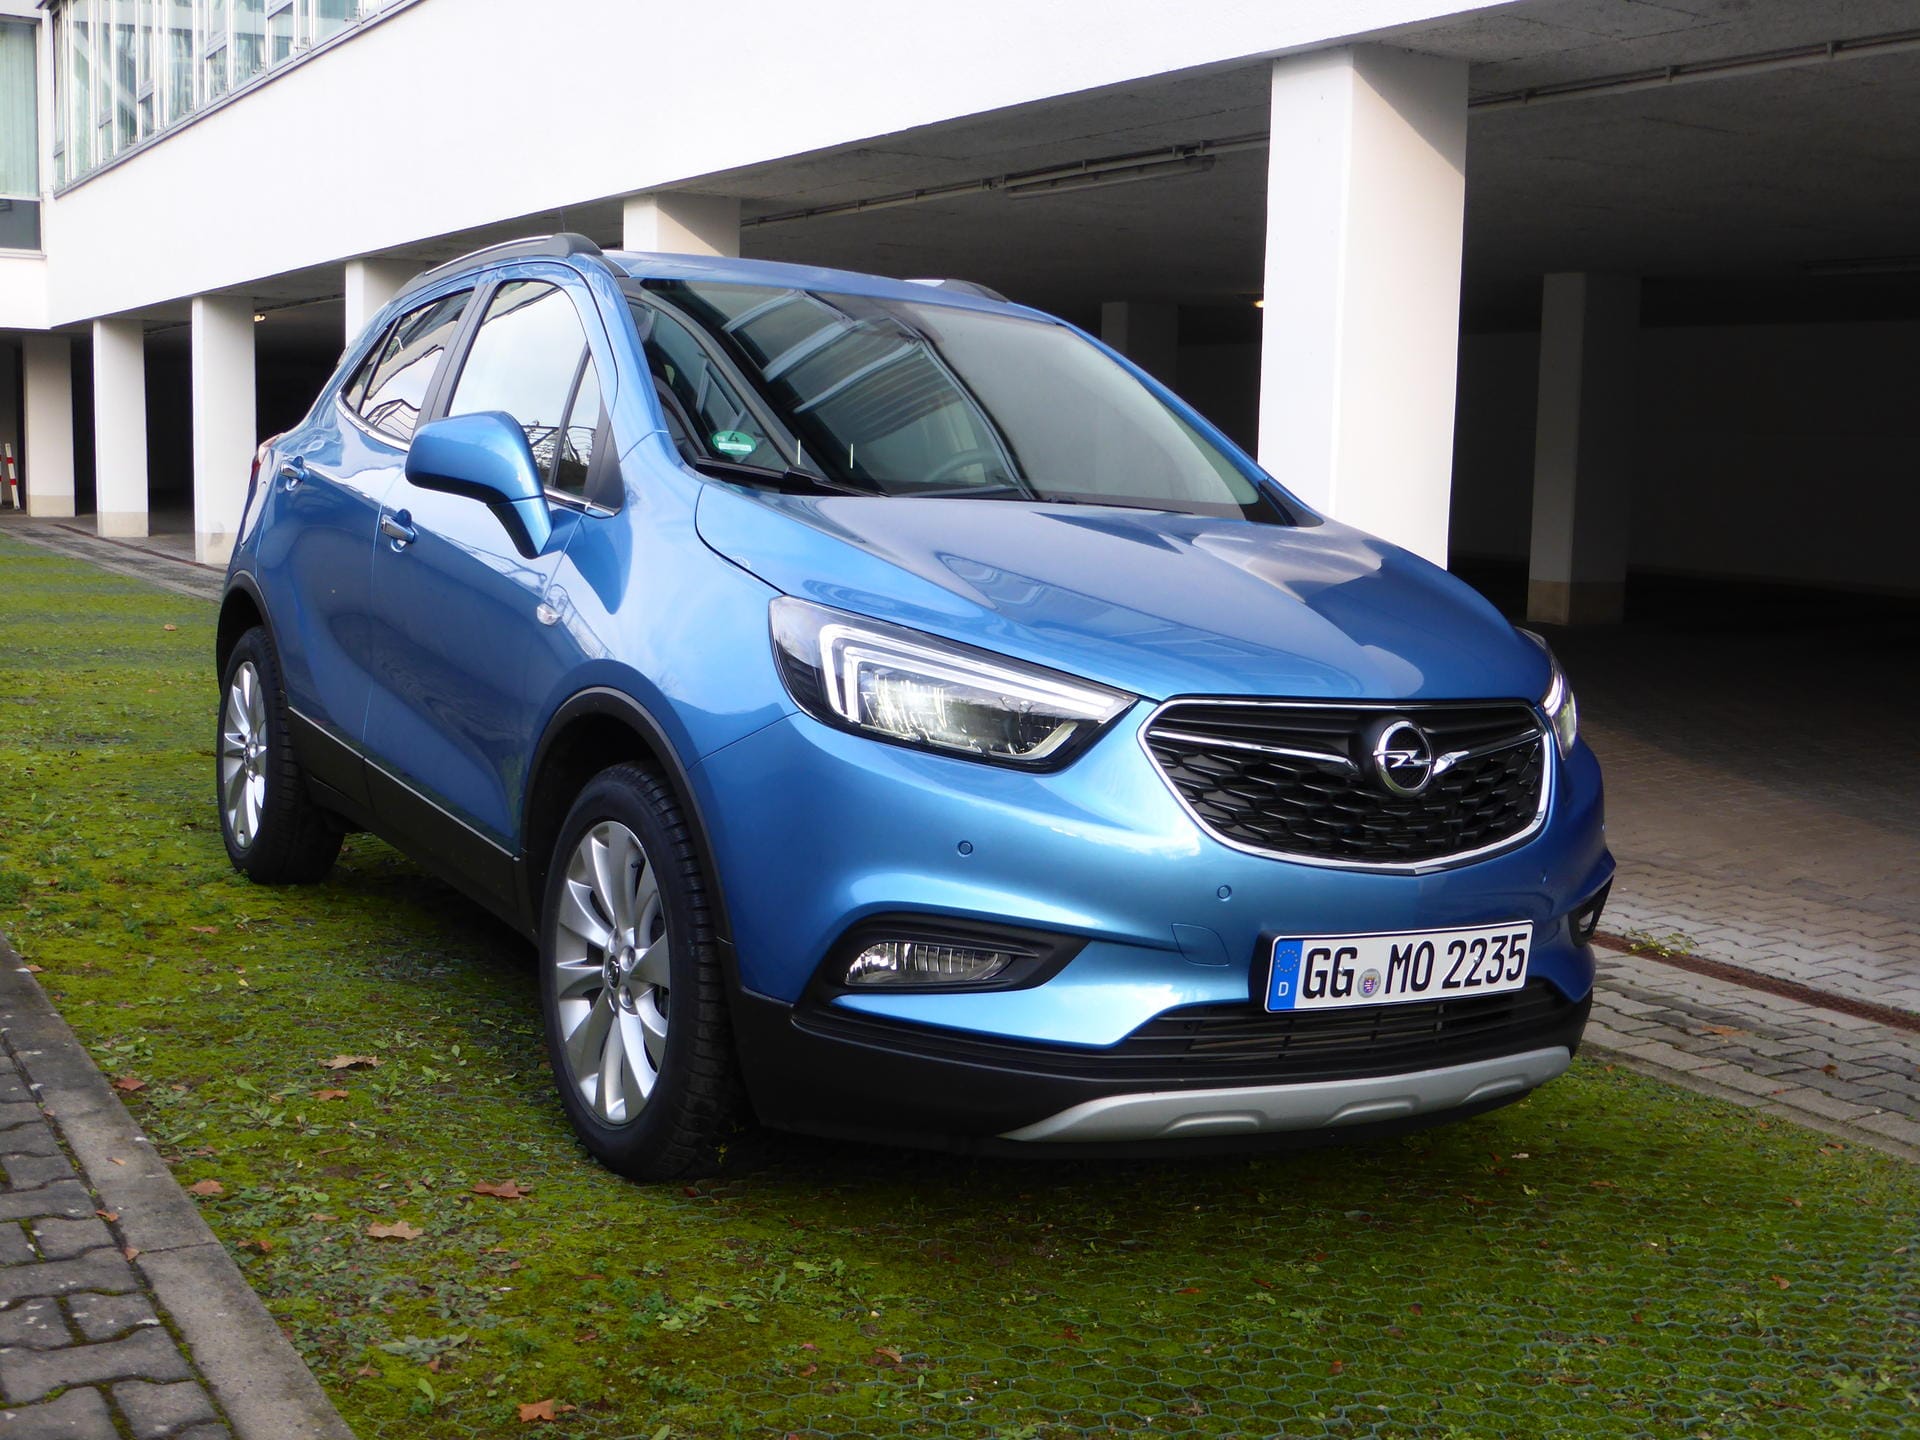 Preislich startet der Opel Mokka X bei knapp 19.000 Euro. Mit starkem Dieselmotor und Allradantrieb ist man aber auch bereits bei gut 27.000 Euro angelangt.